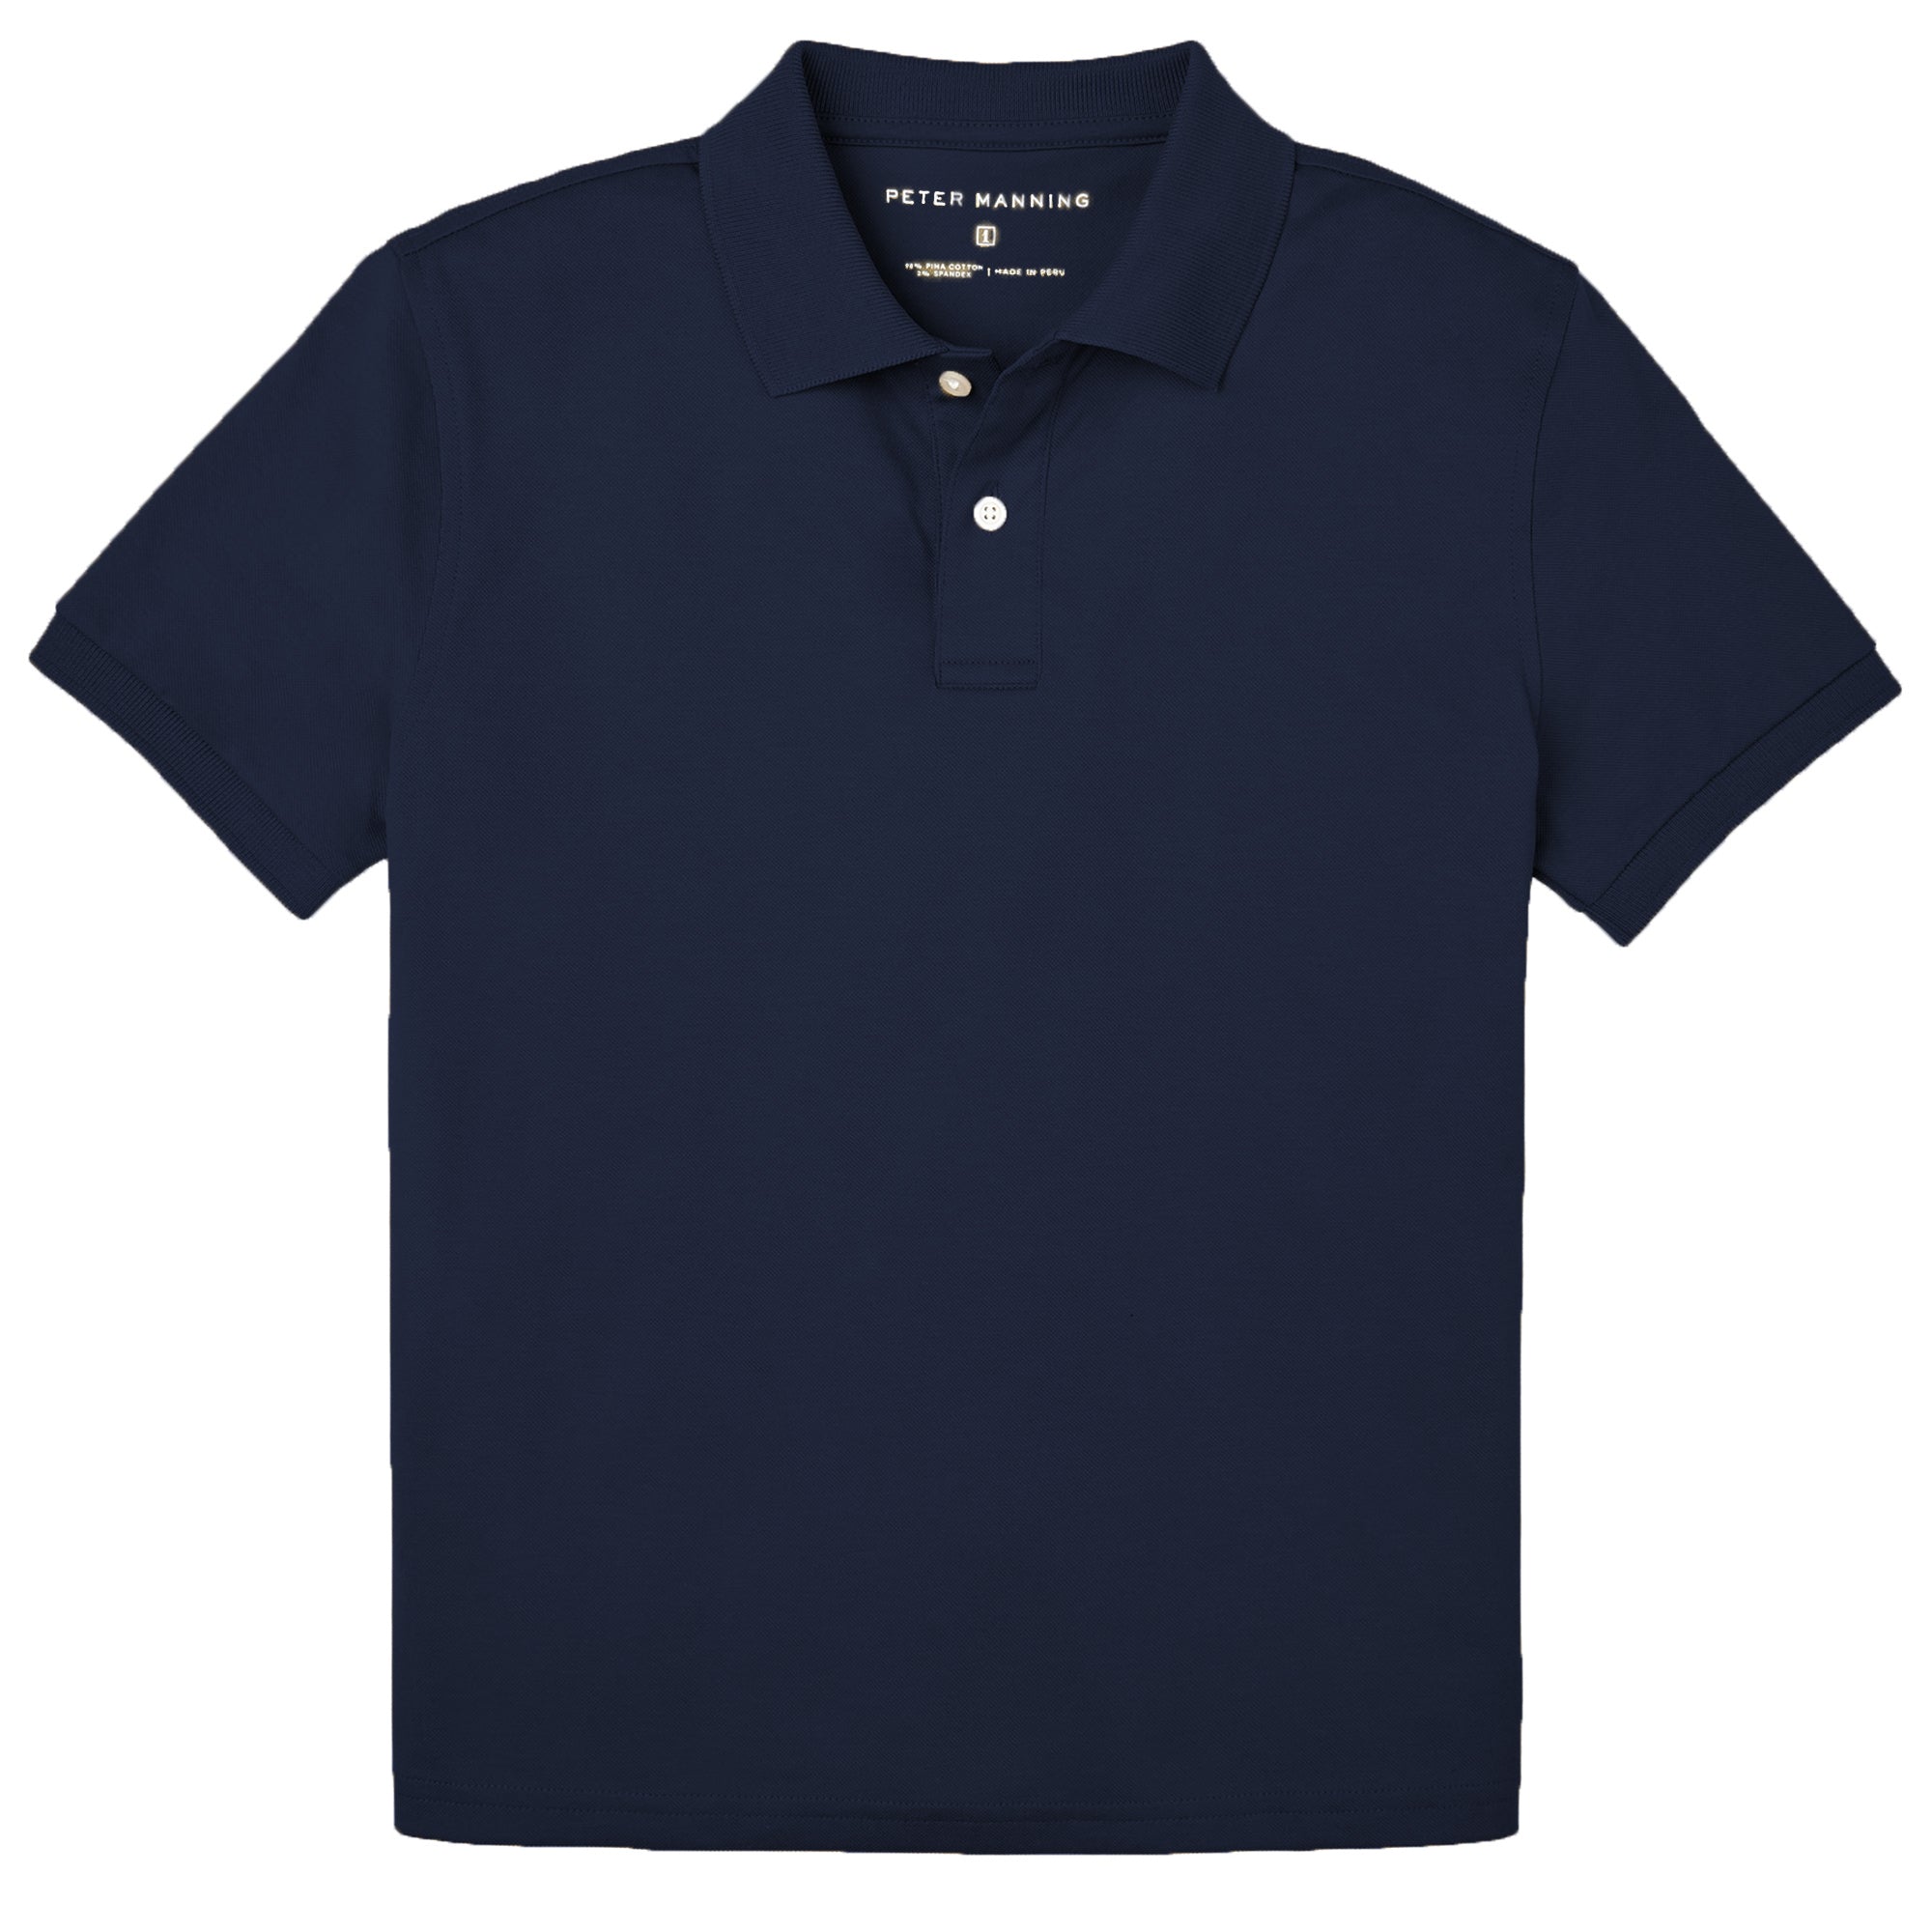 Navy Polo Shirt for Short Men – Peter Manning New York